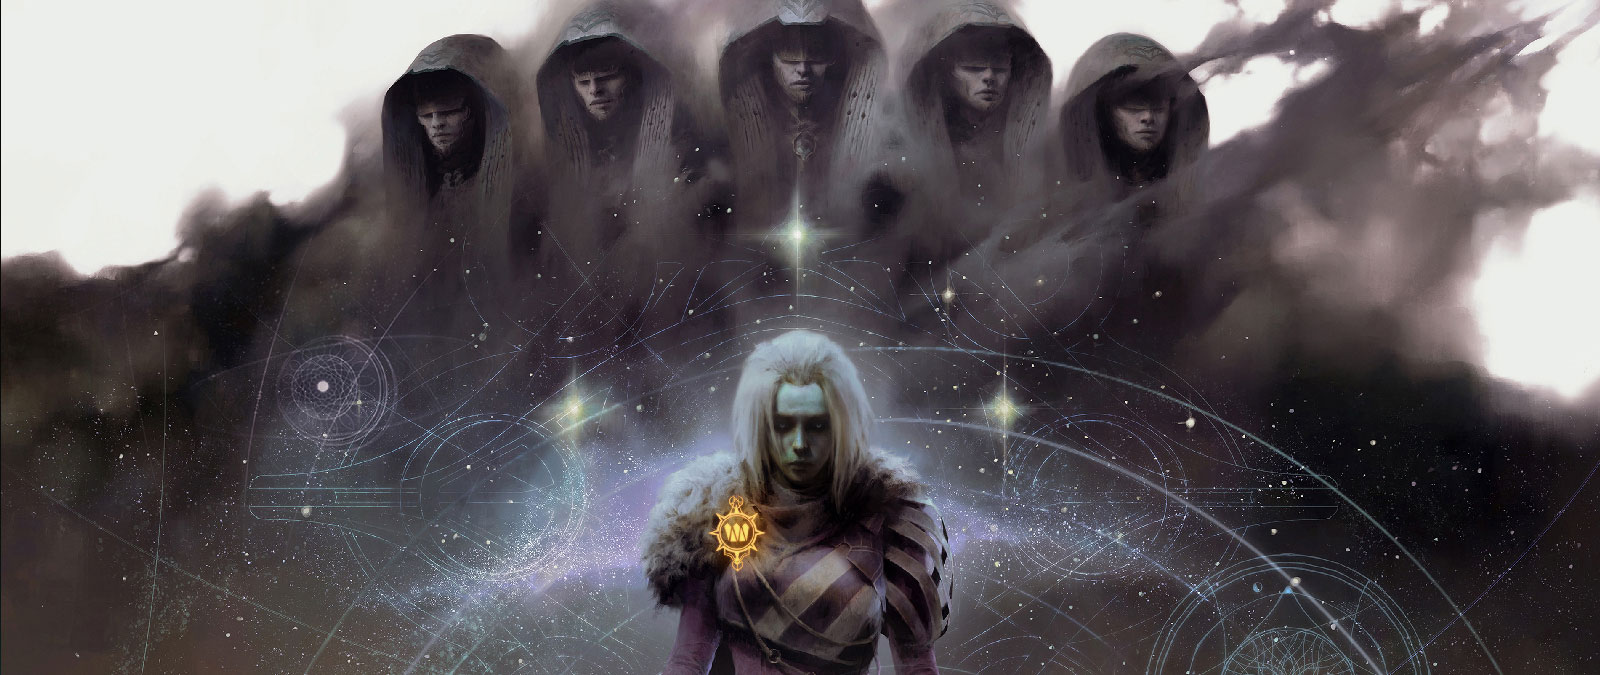 A Witch Queen com cinco figuras encapuzadas misturadas com nuvens escuras, estrelas e contornos de formas